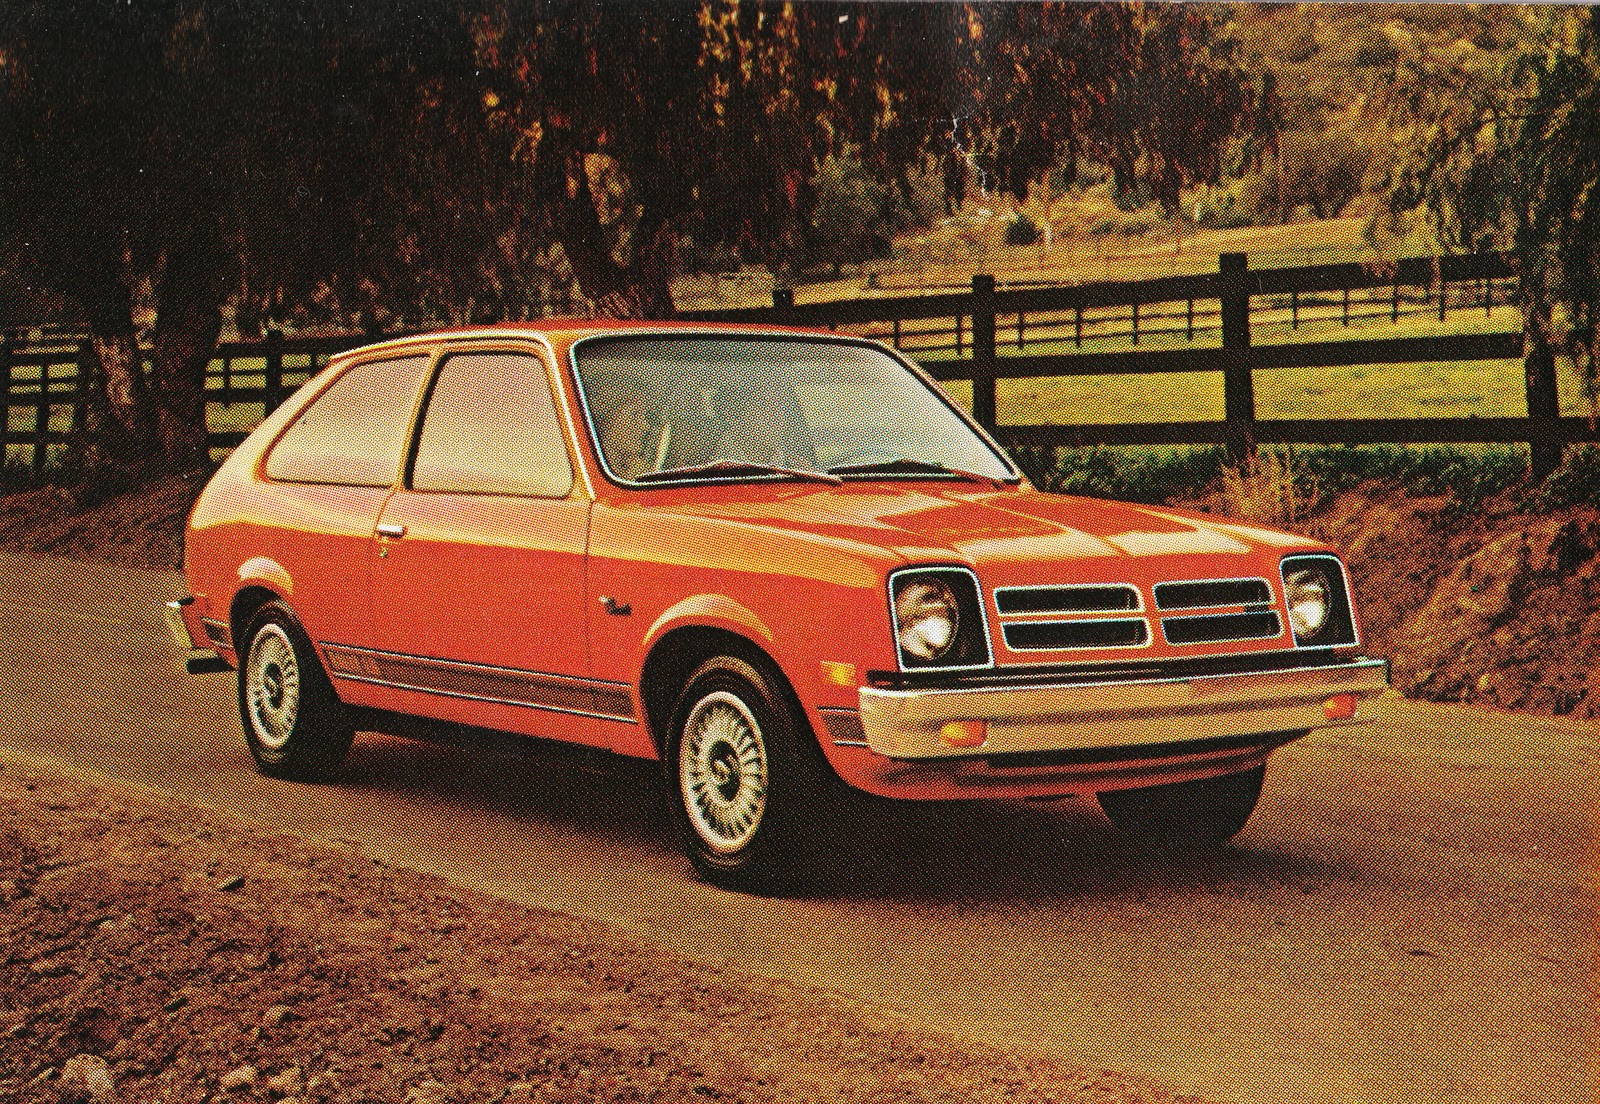 Chevrolet chevette 1976 photo - 1